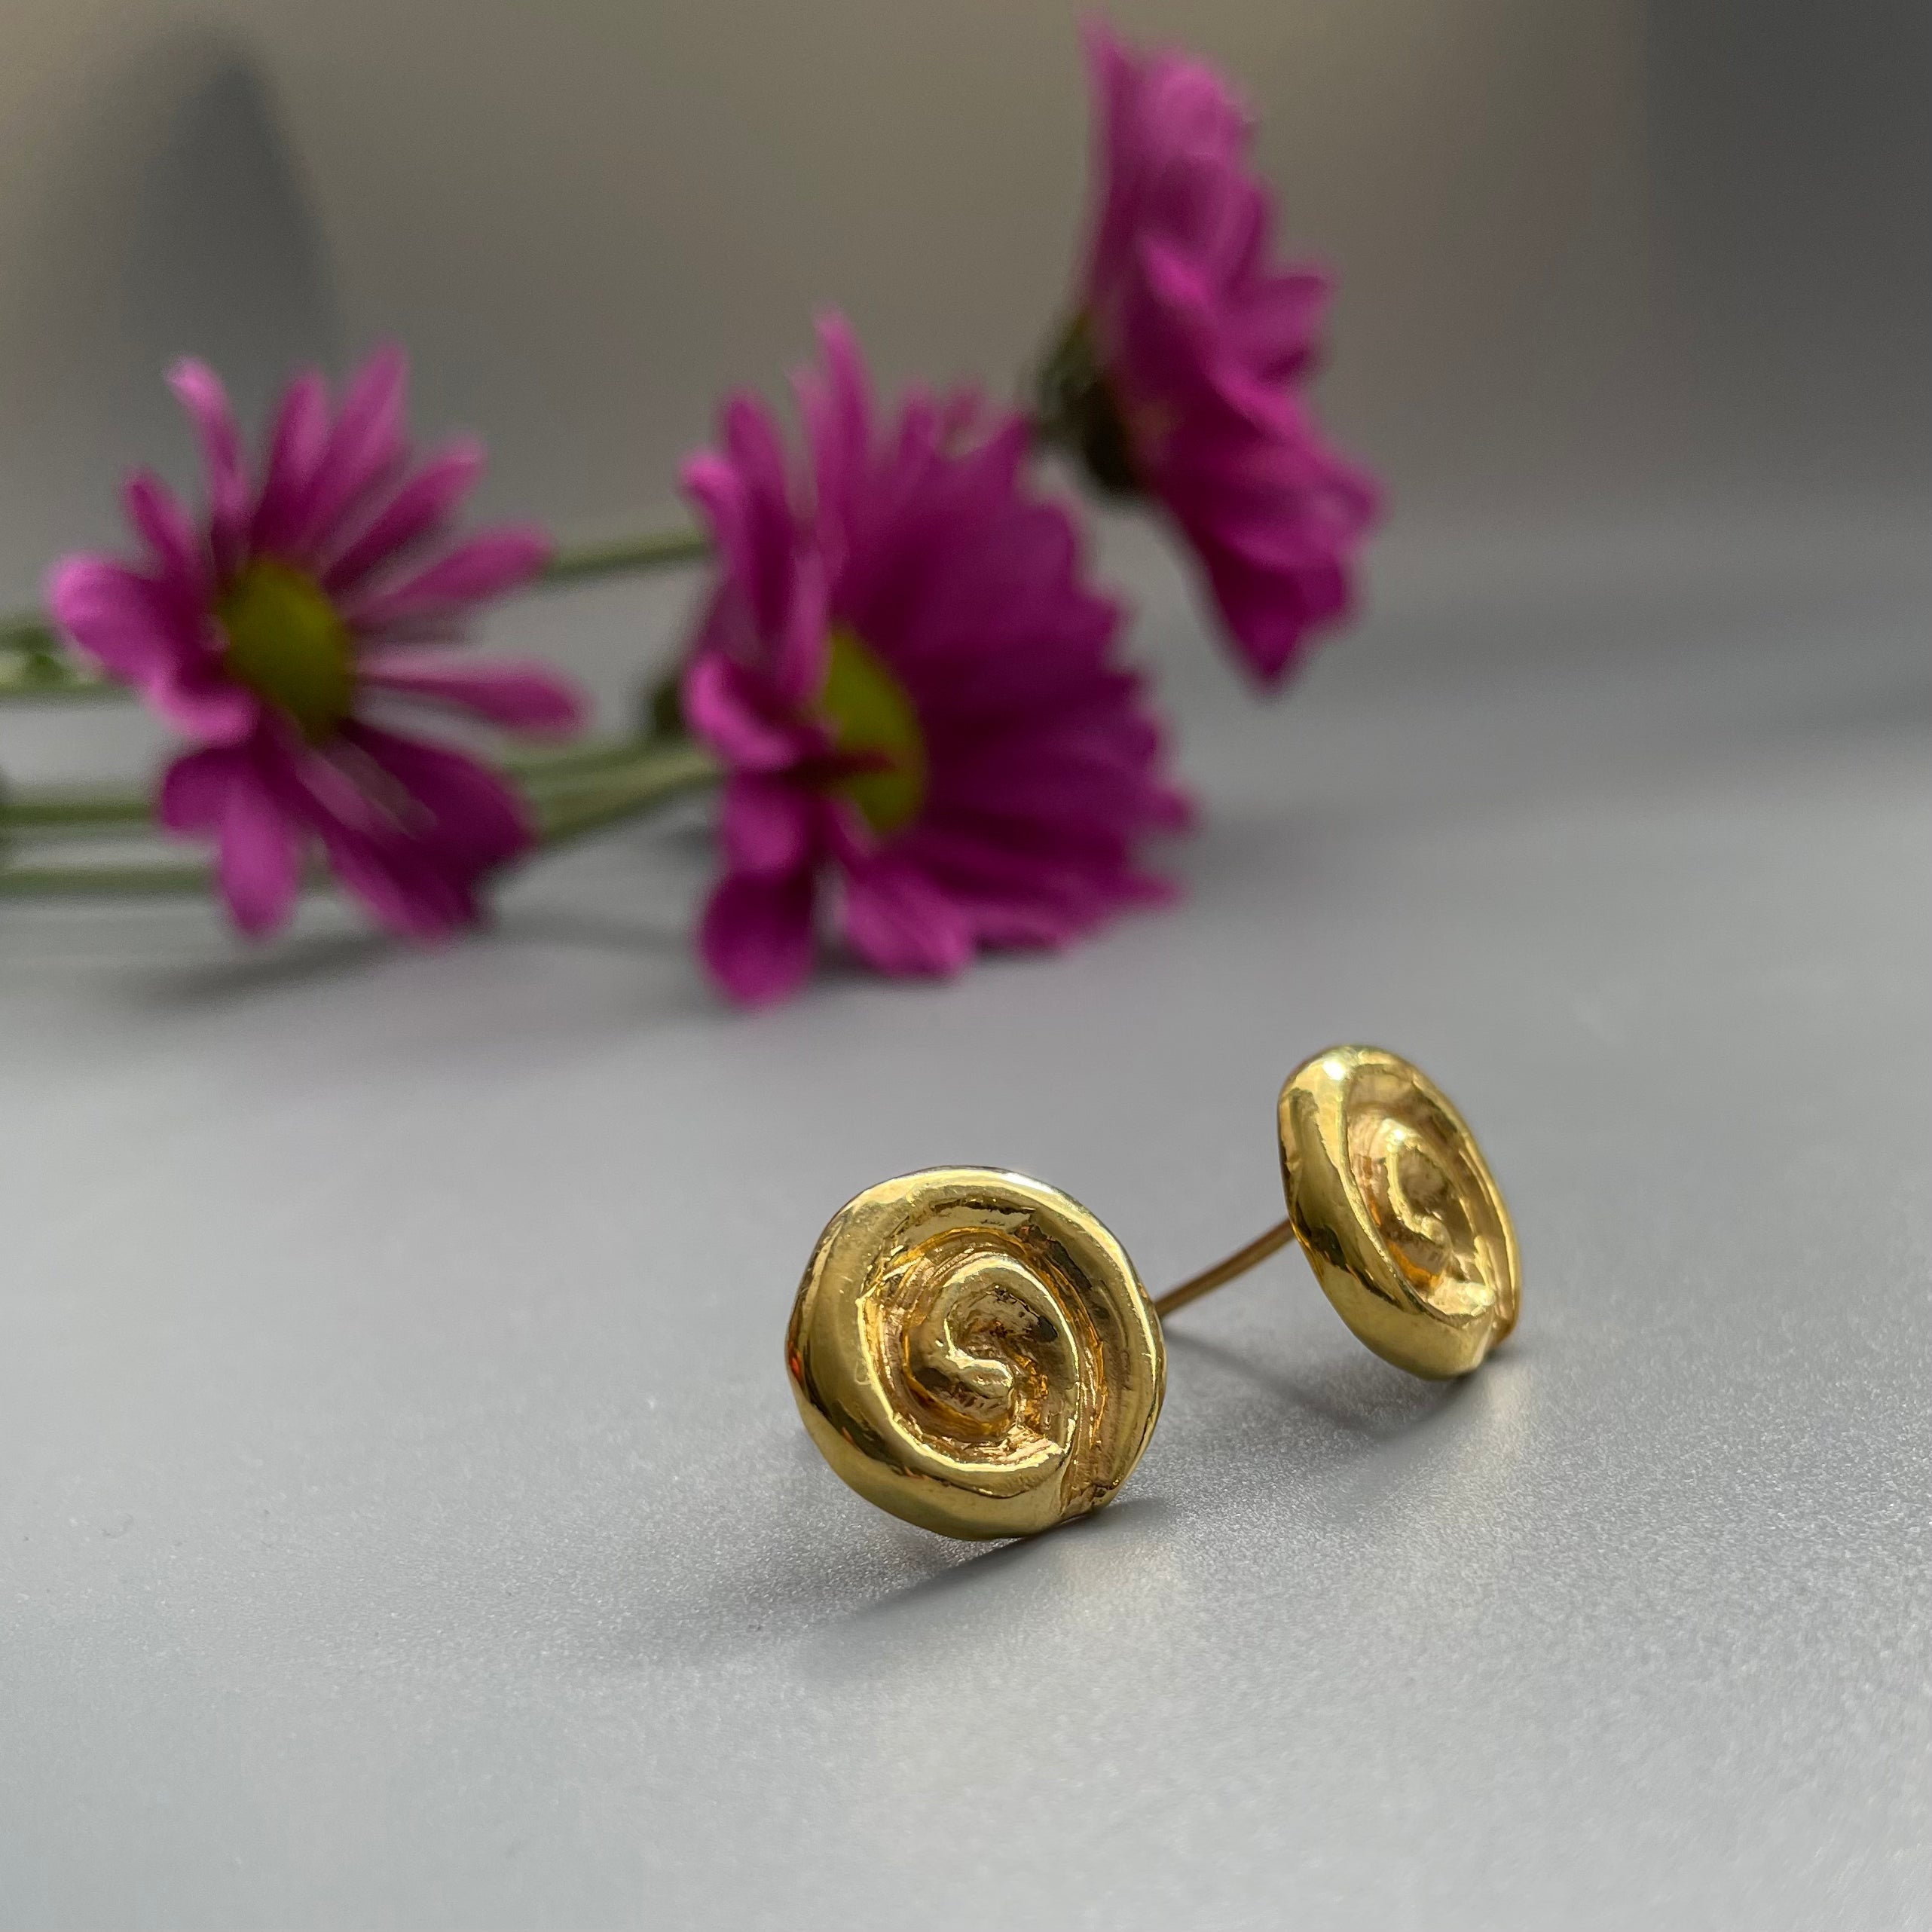 Persian EarringsFlower Shaped Gold Plate Silver Earrings in Minimal Design-jewellery: Persian Jewelry-AFRA ART GALLERY